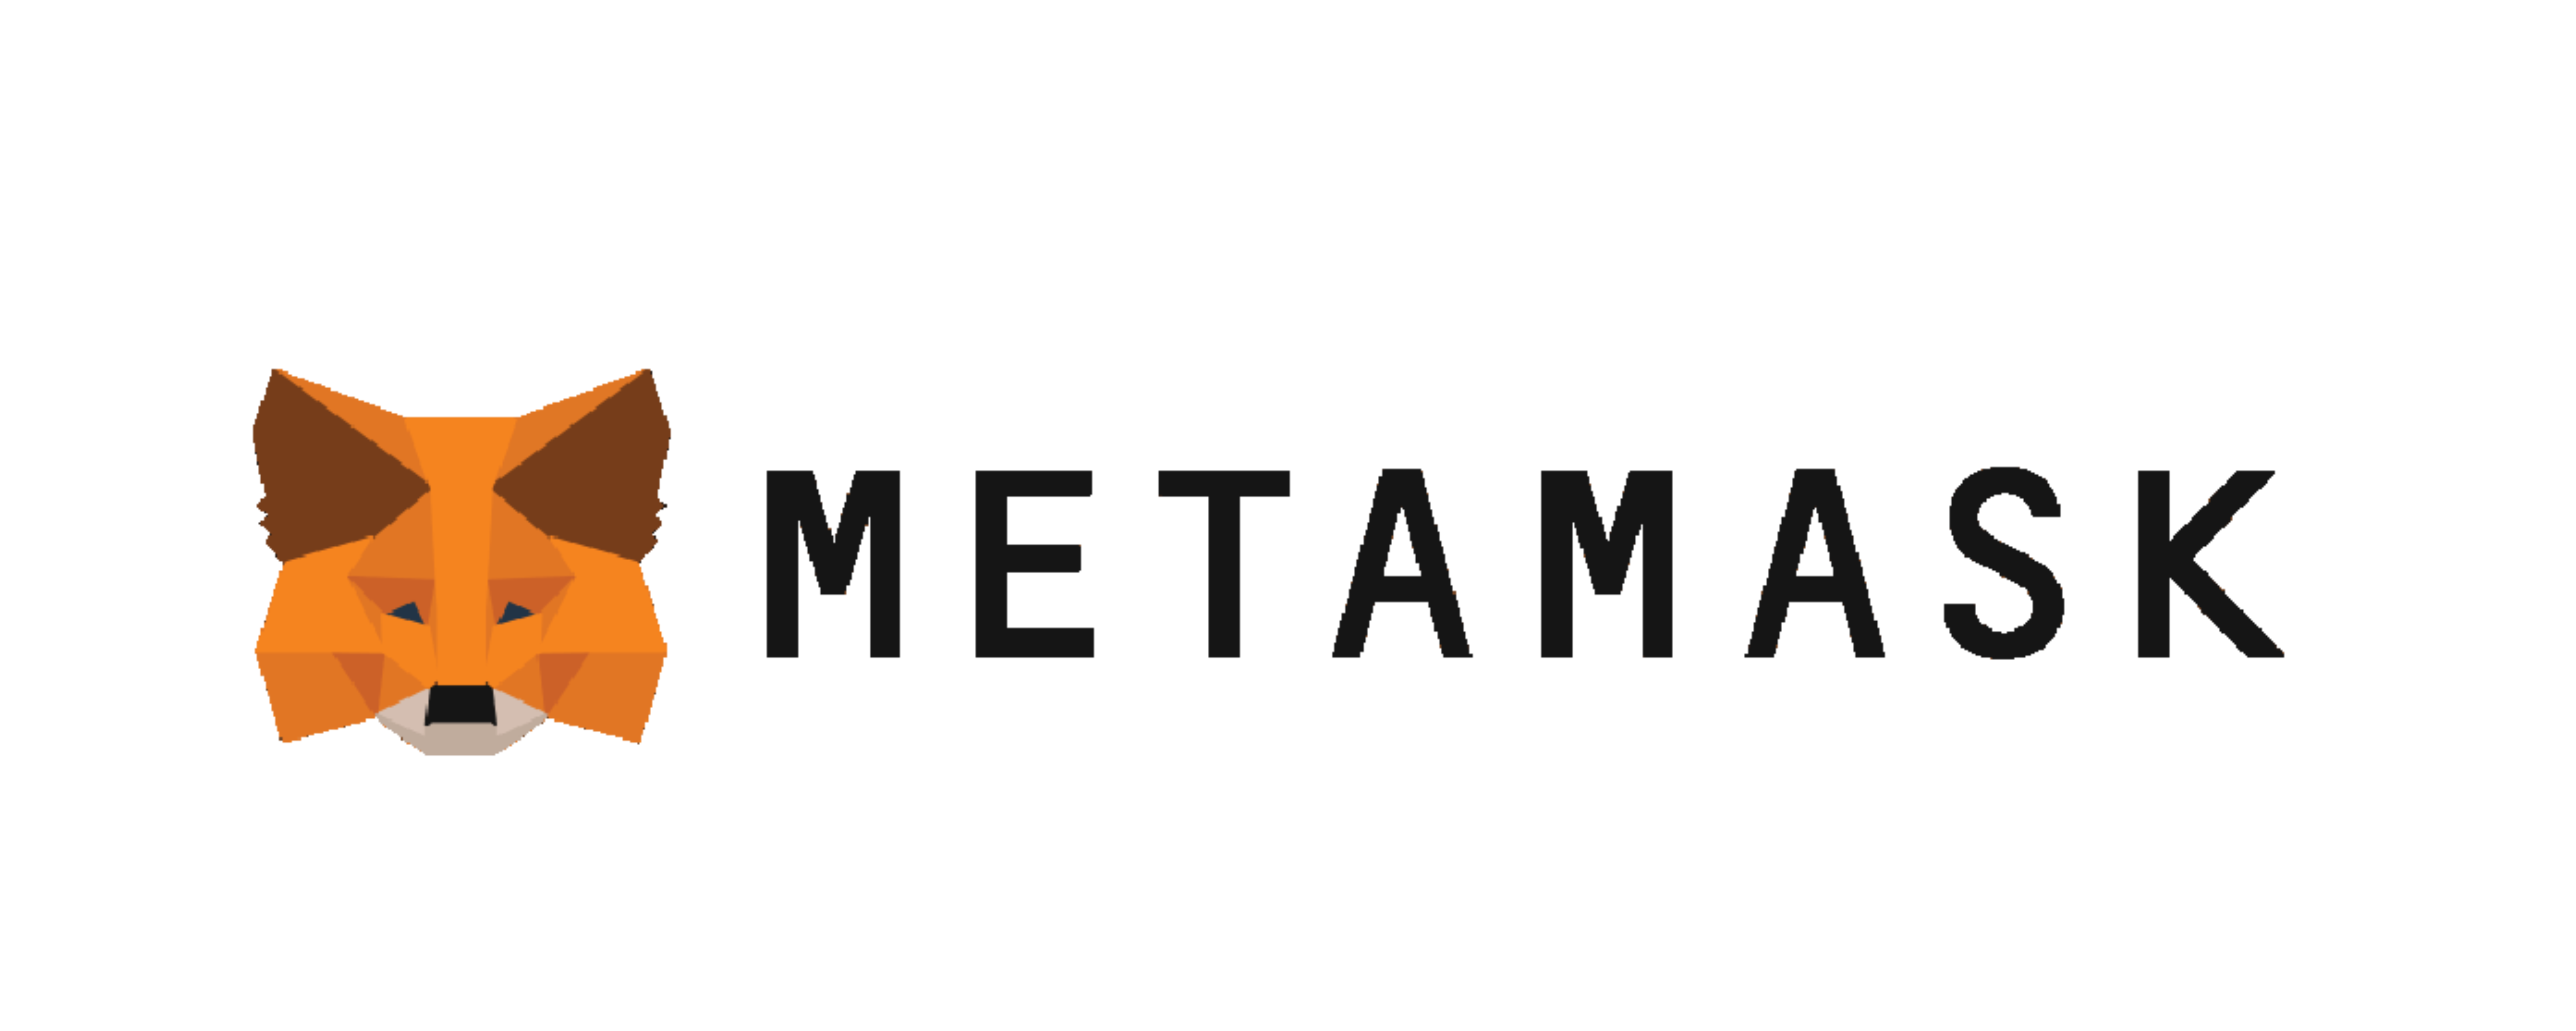 metamask_